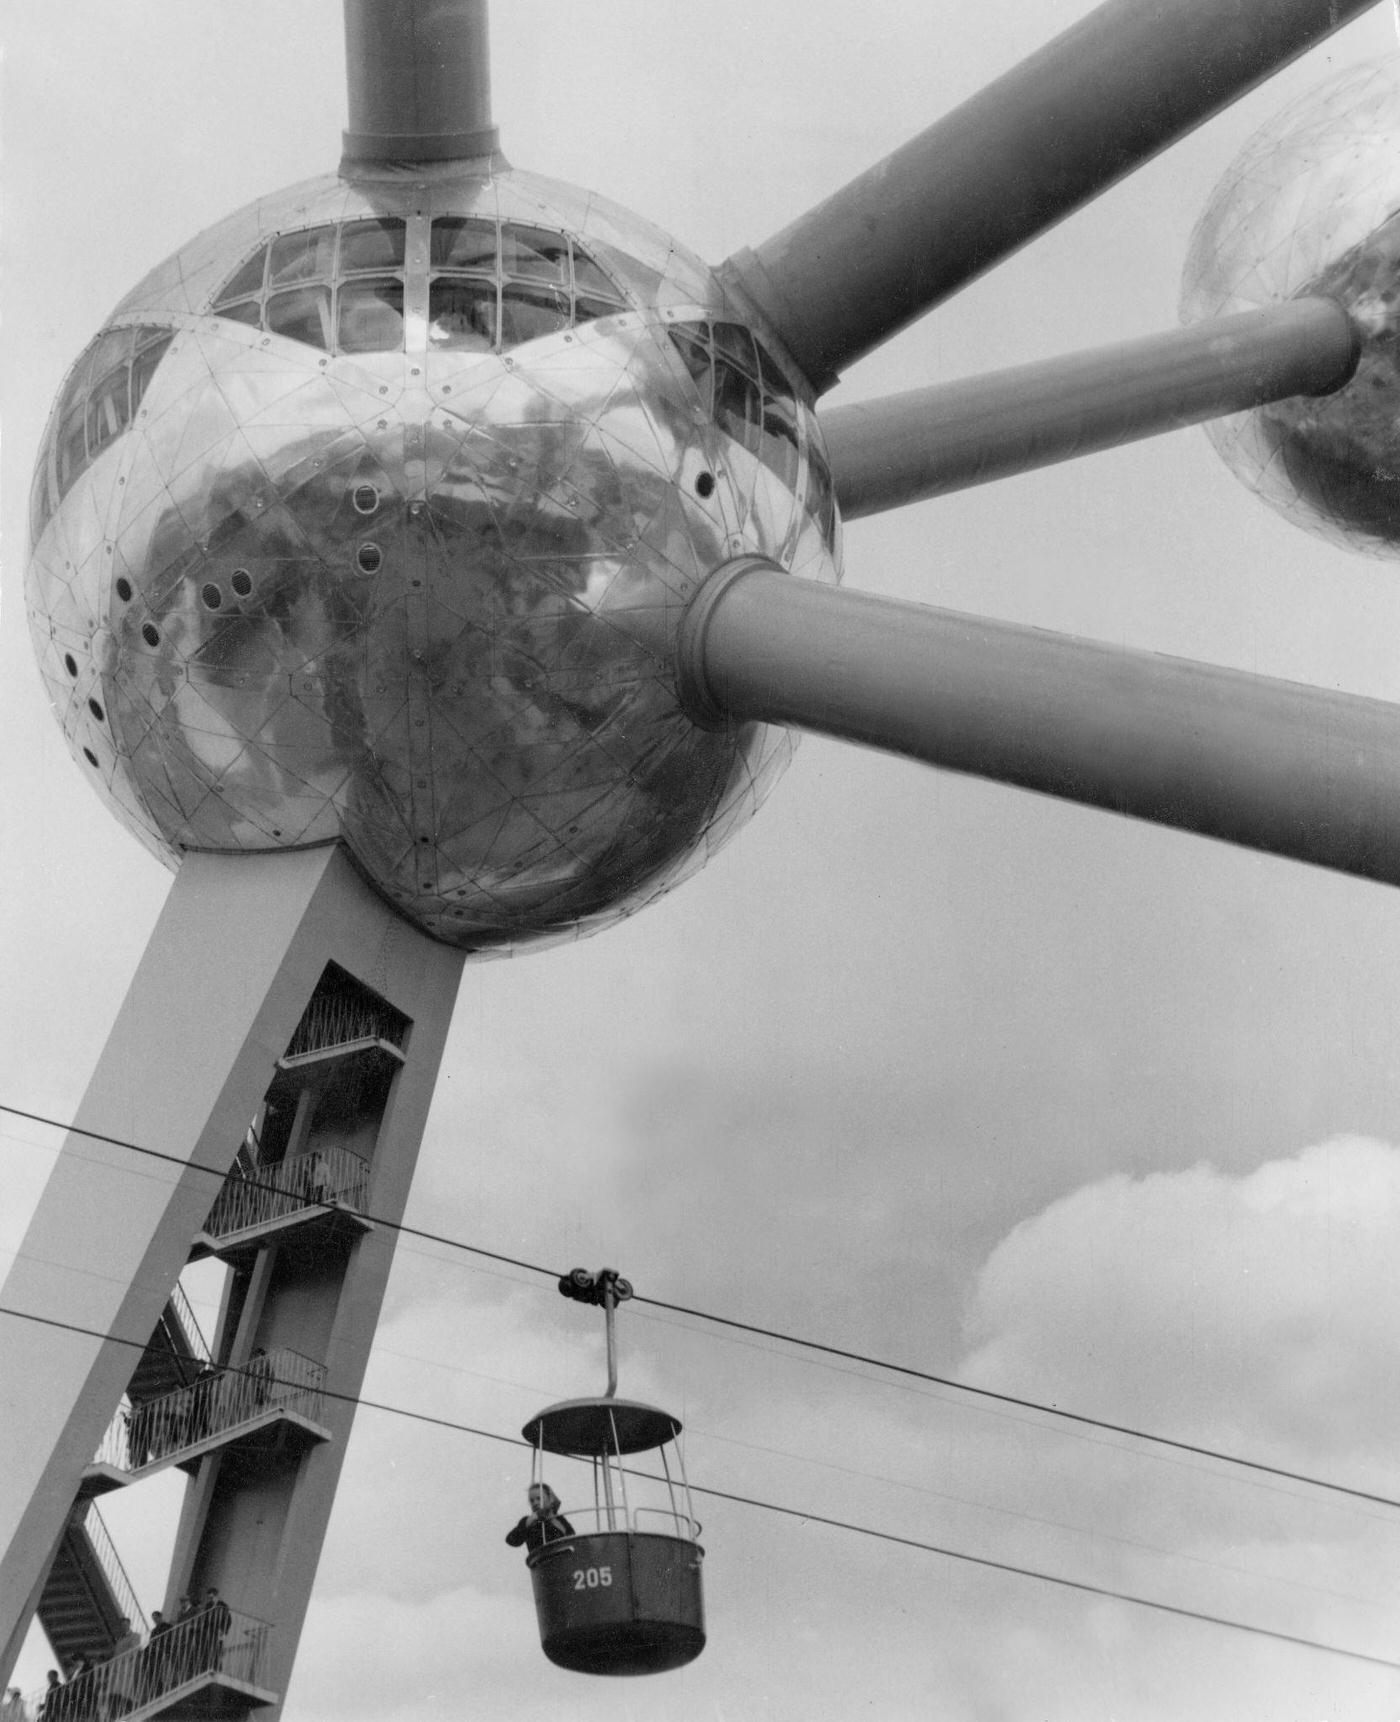 Atomium and gondola